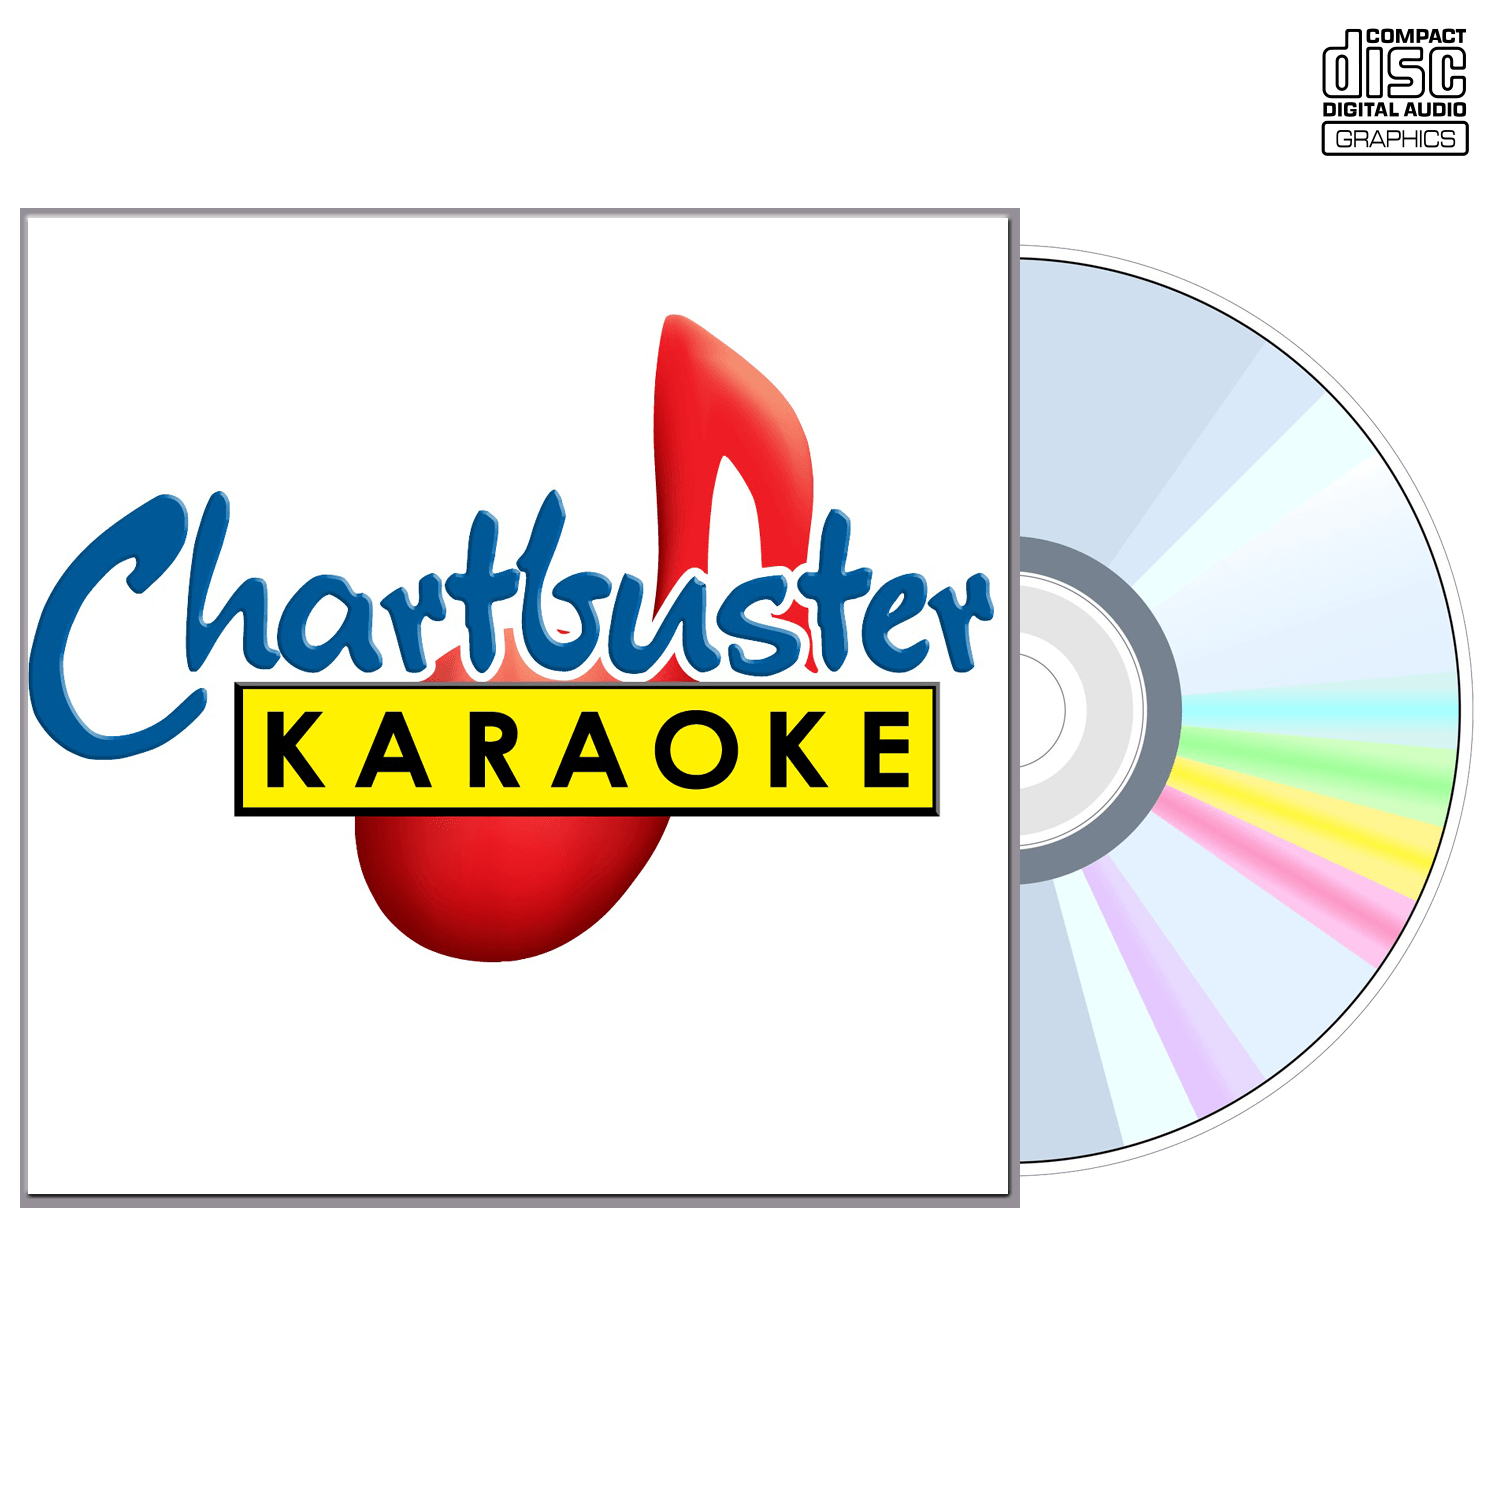 Beach Boys - CD+G - Chartbuster Karaoke - Karaoke Home Entertainment